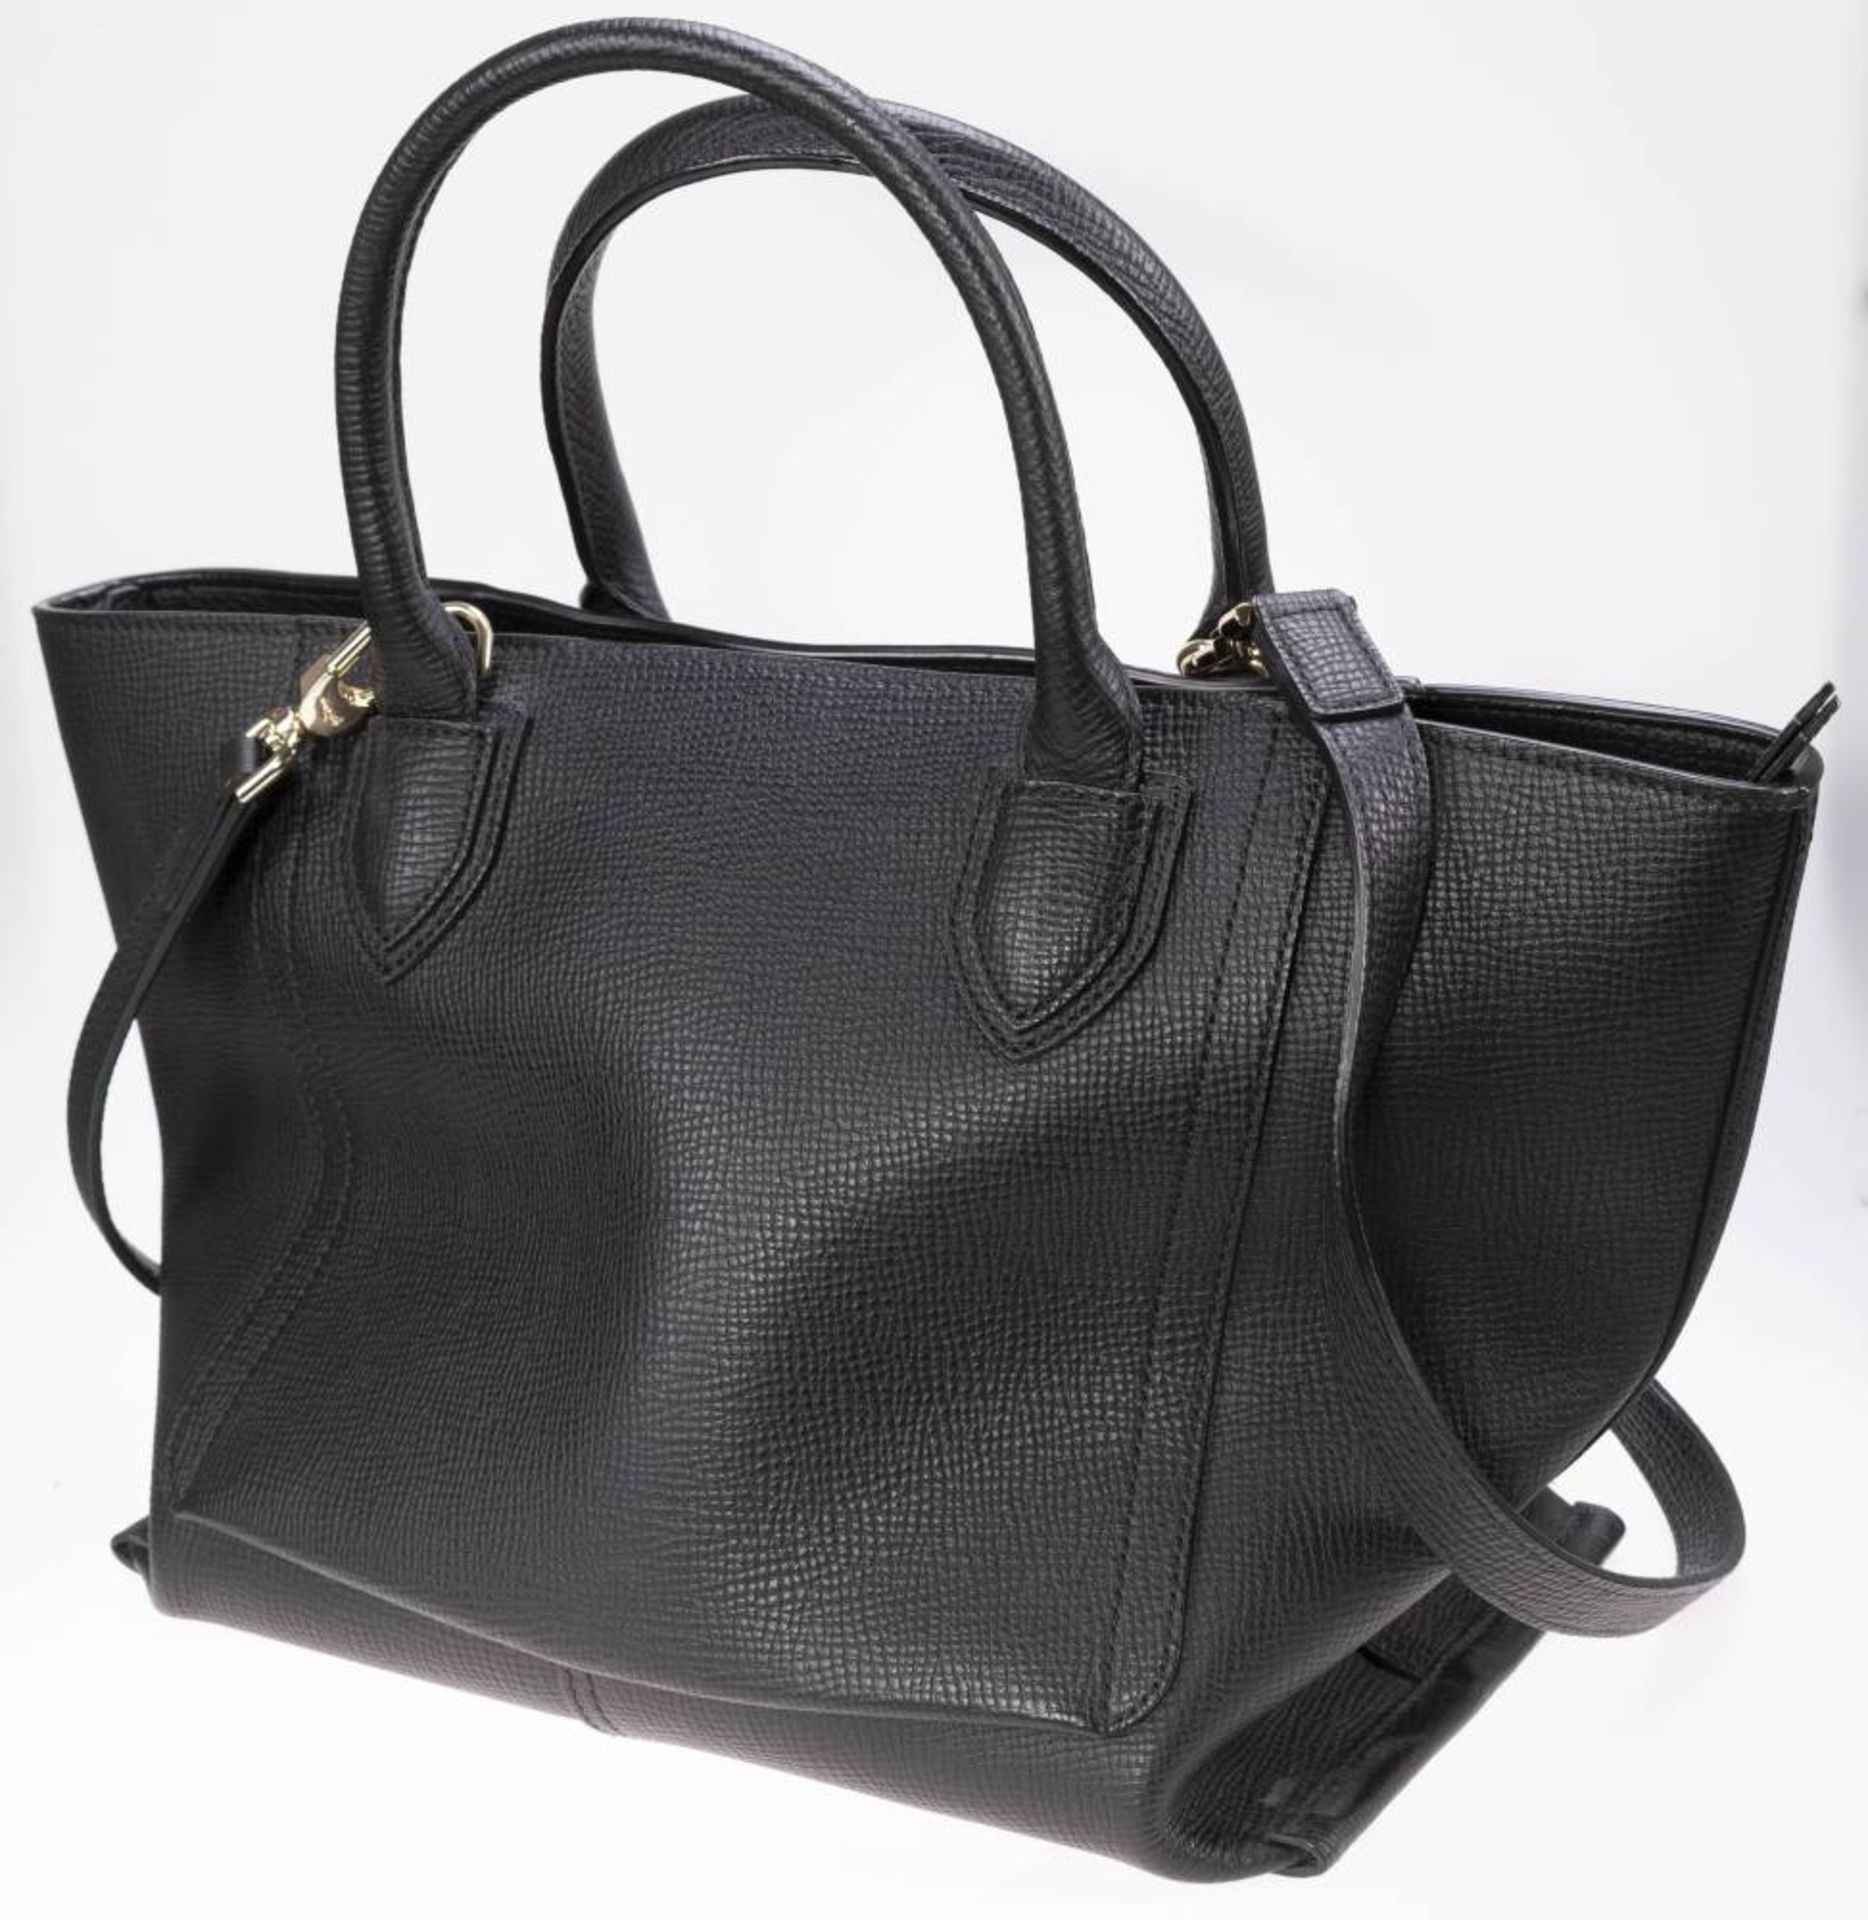 Longchamp Shopper, schwarzes Leder, goldfarbenes Metall, Außentasche mit Reißverschluss, innen - Bild 5 aus 6